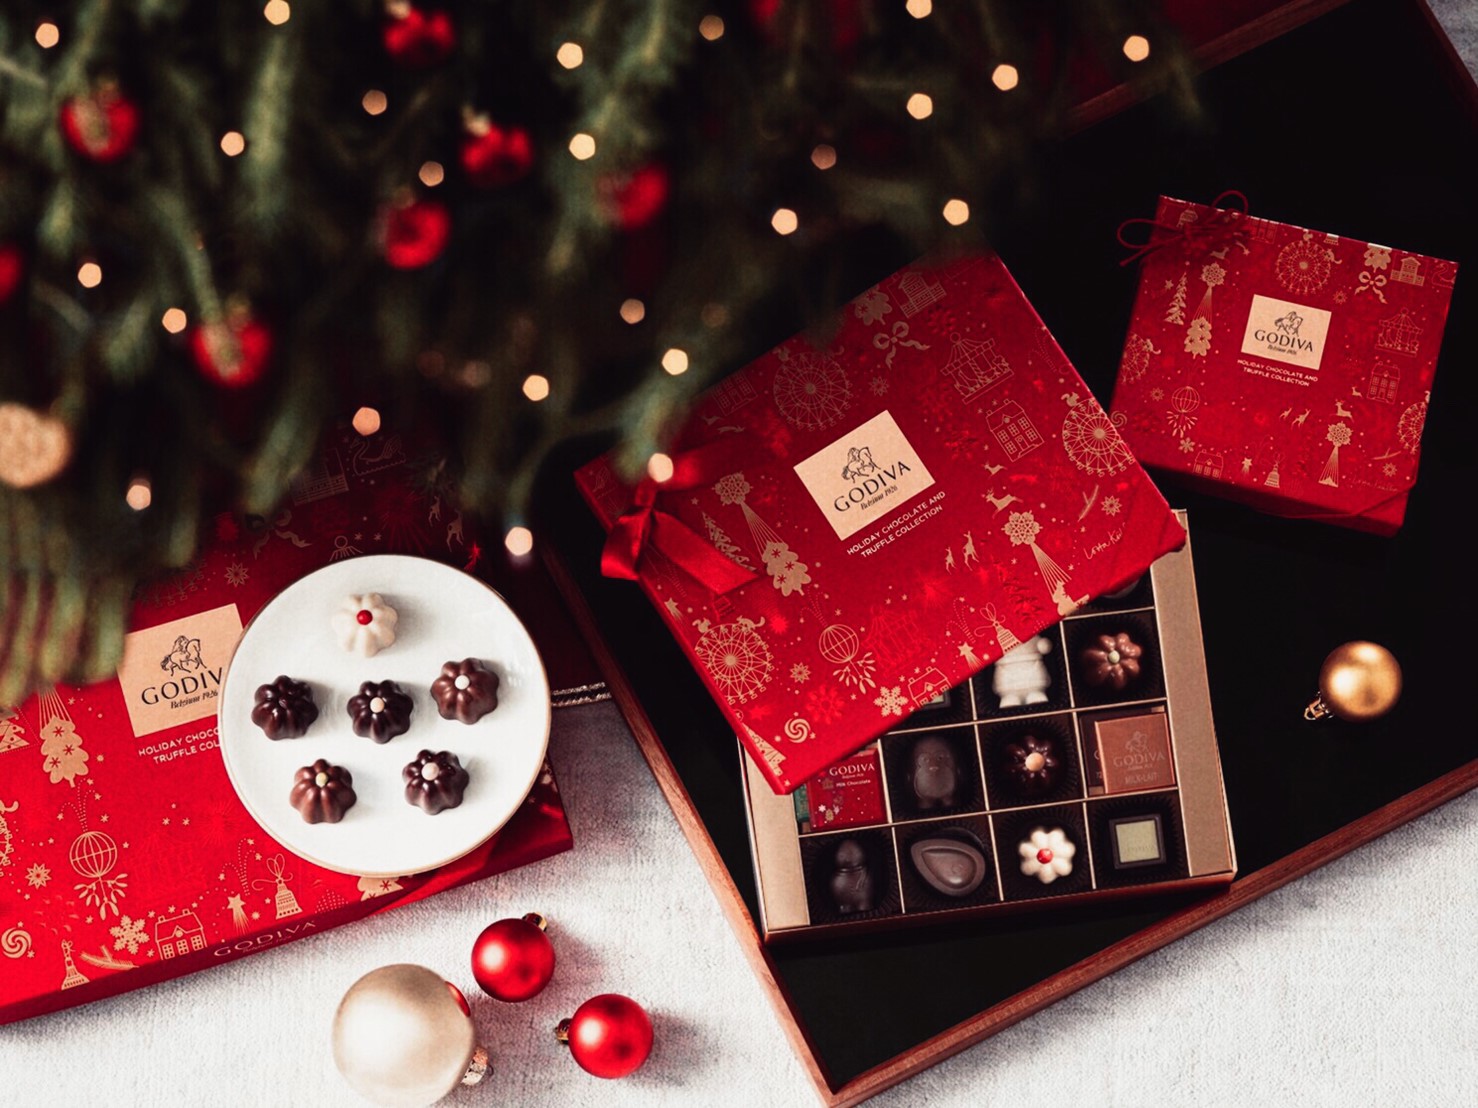 採用了聖誕紅作主色調的GODIVA 2019聖誕巧克力禮盒🎄